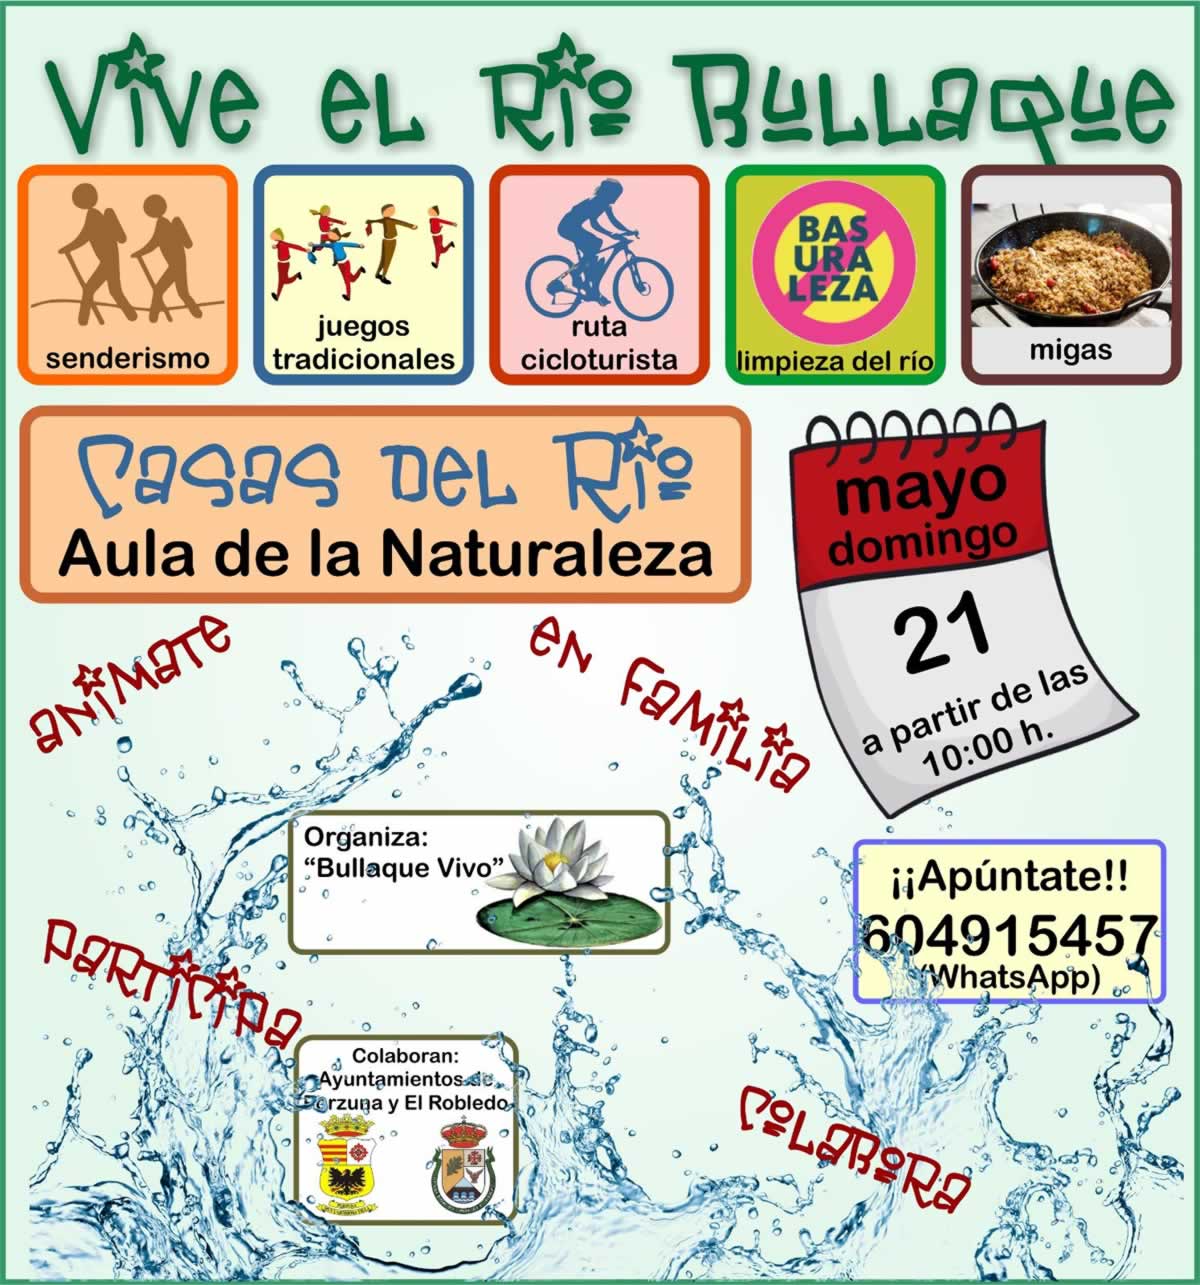 Vive el Río Bullaque este domingo, actividades para toda la familia: senderismo, juegos tradicionales, migas...